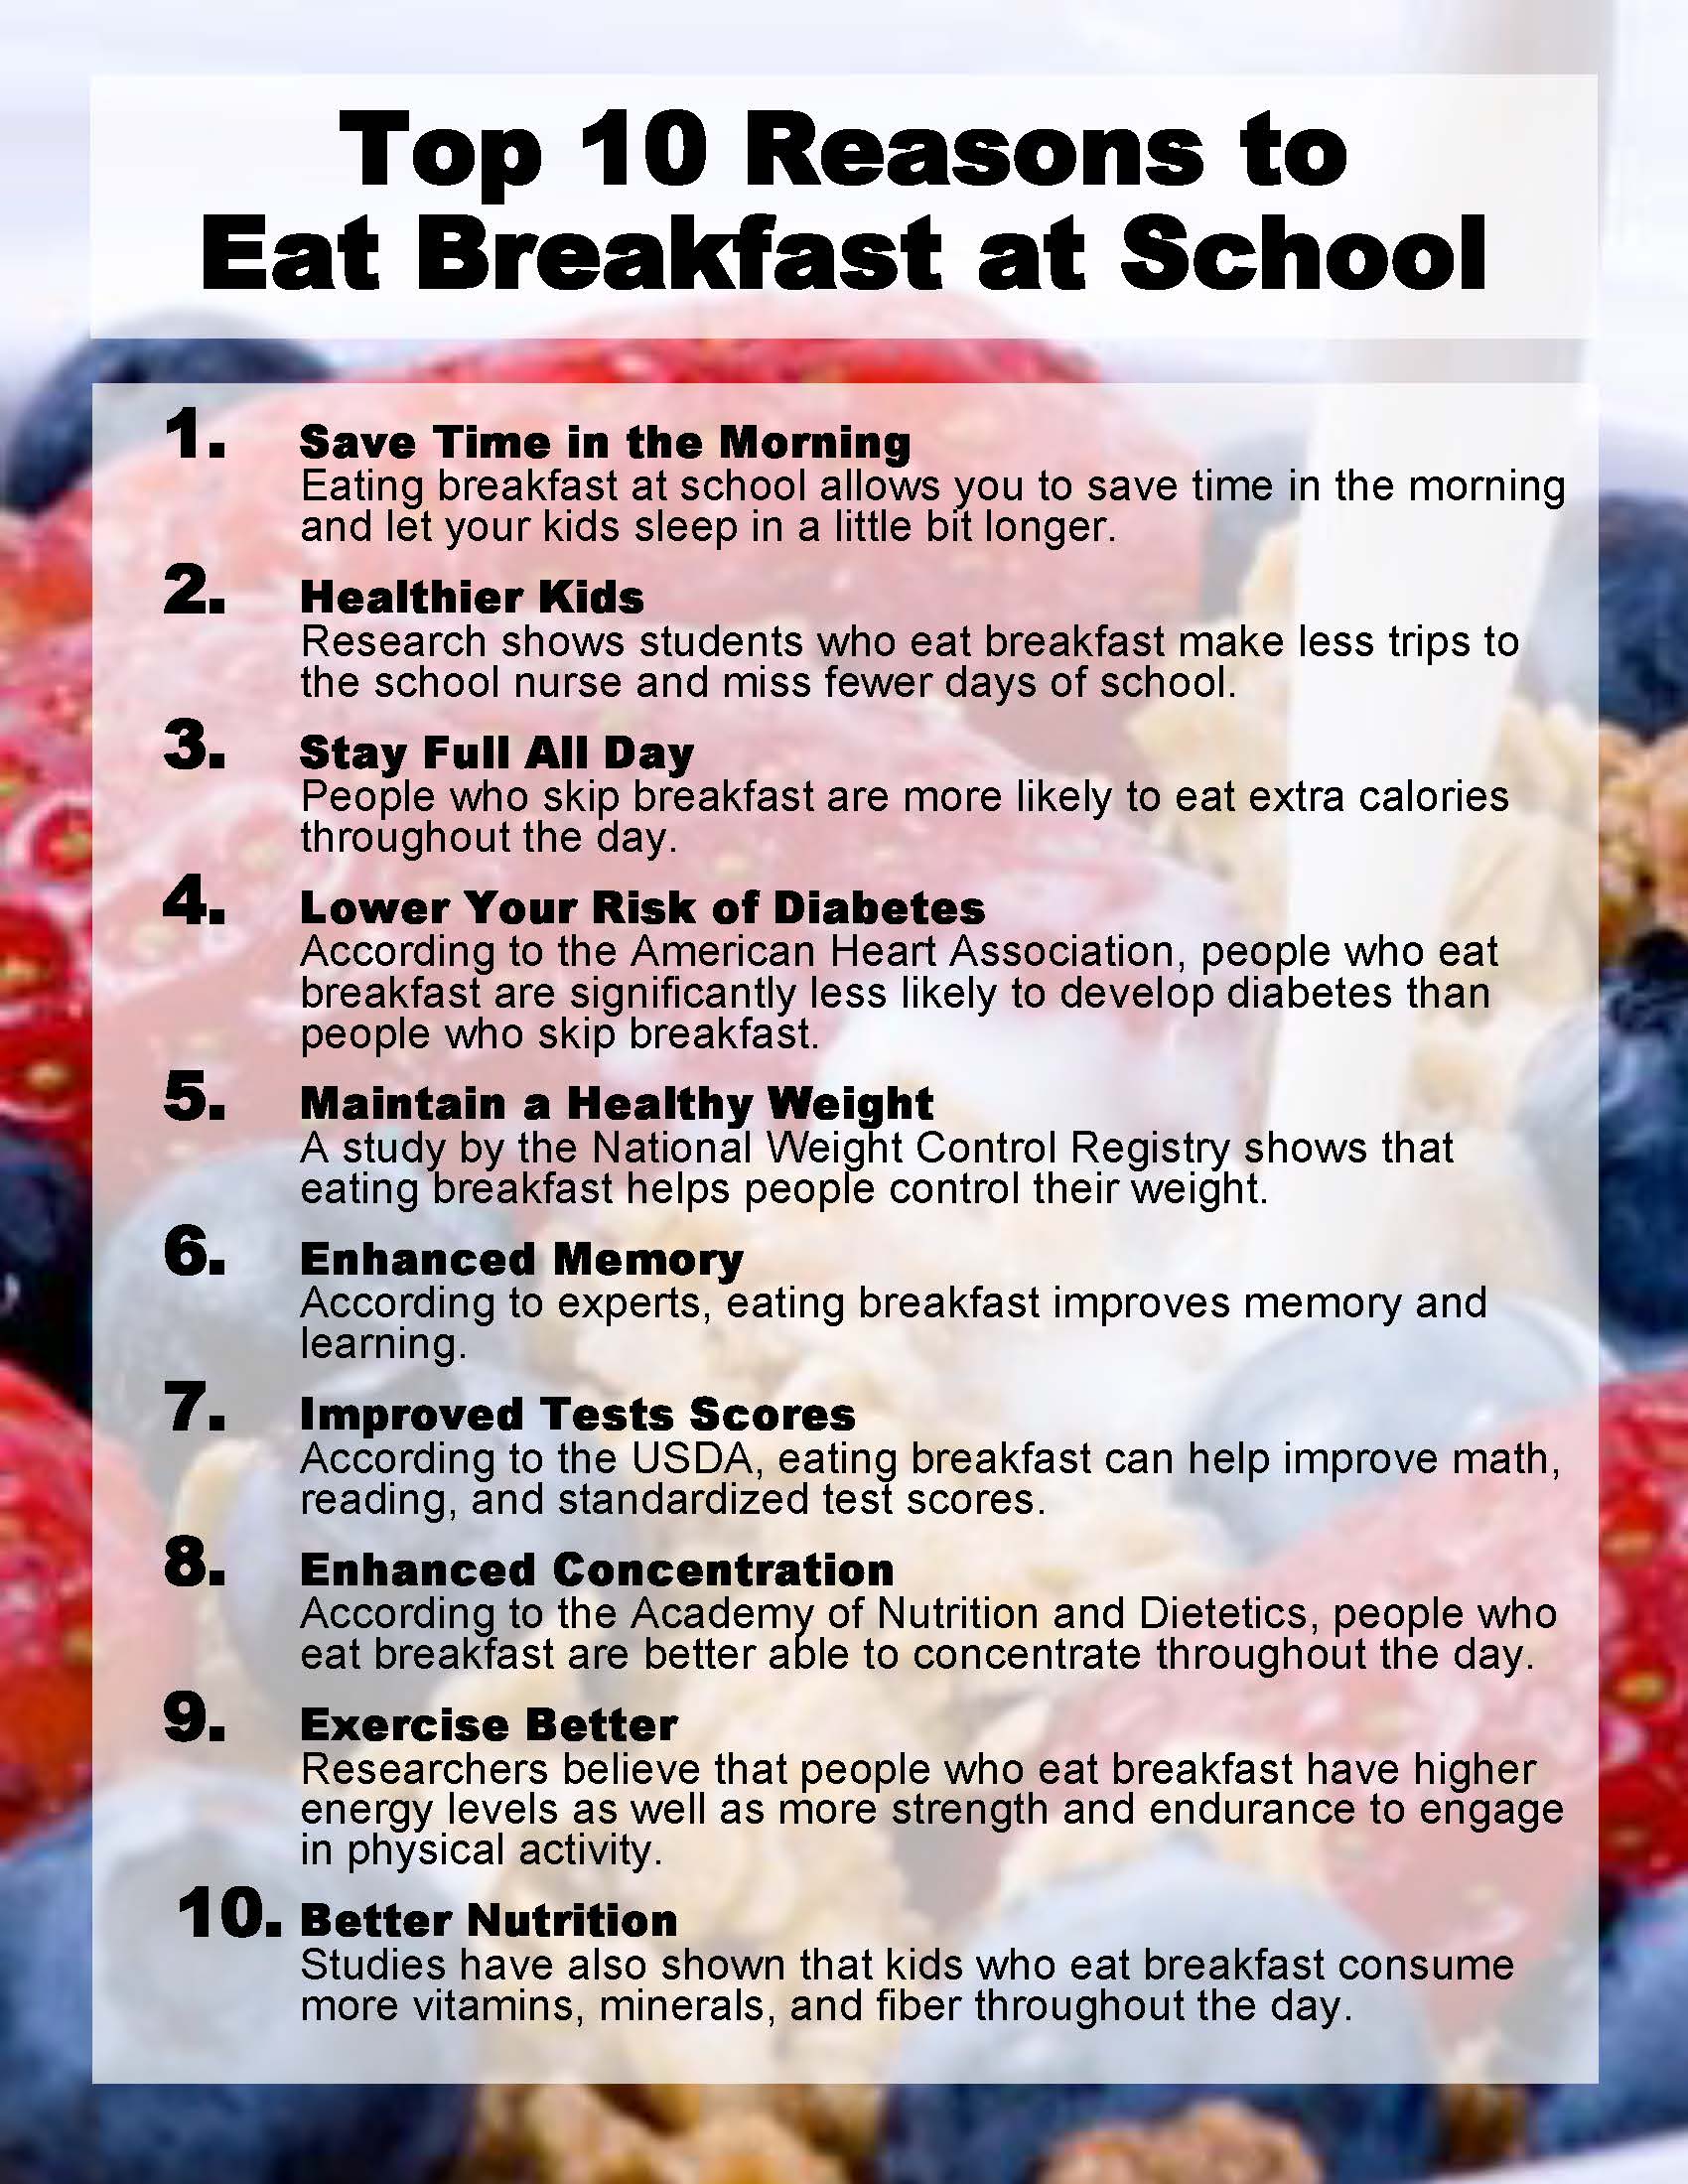 Top 10 reasons to eat breakfast at school